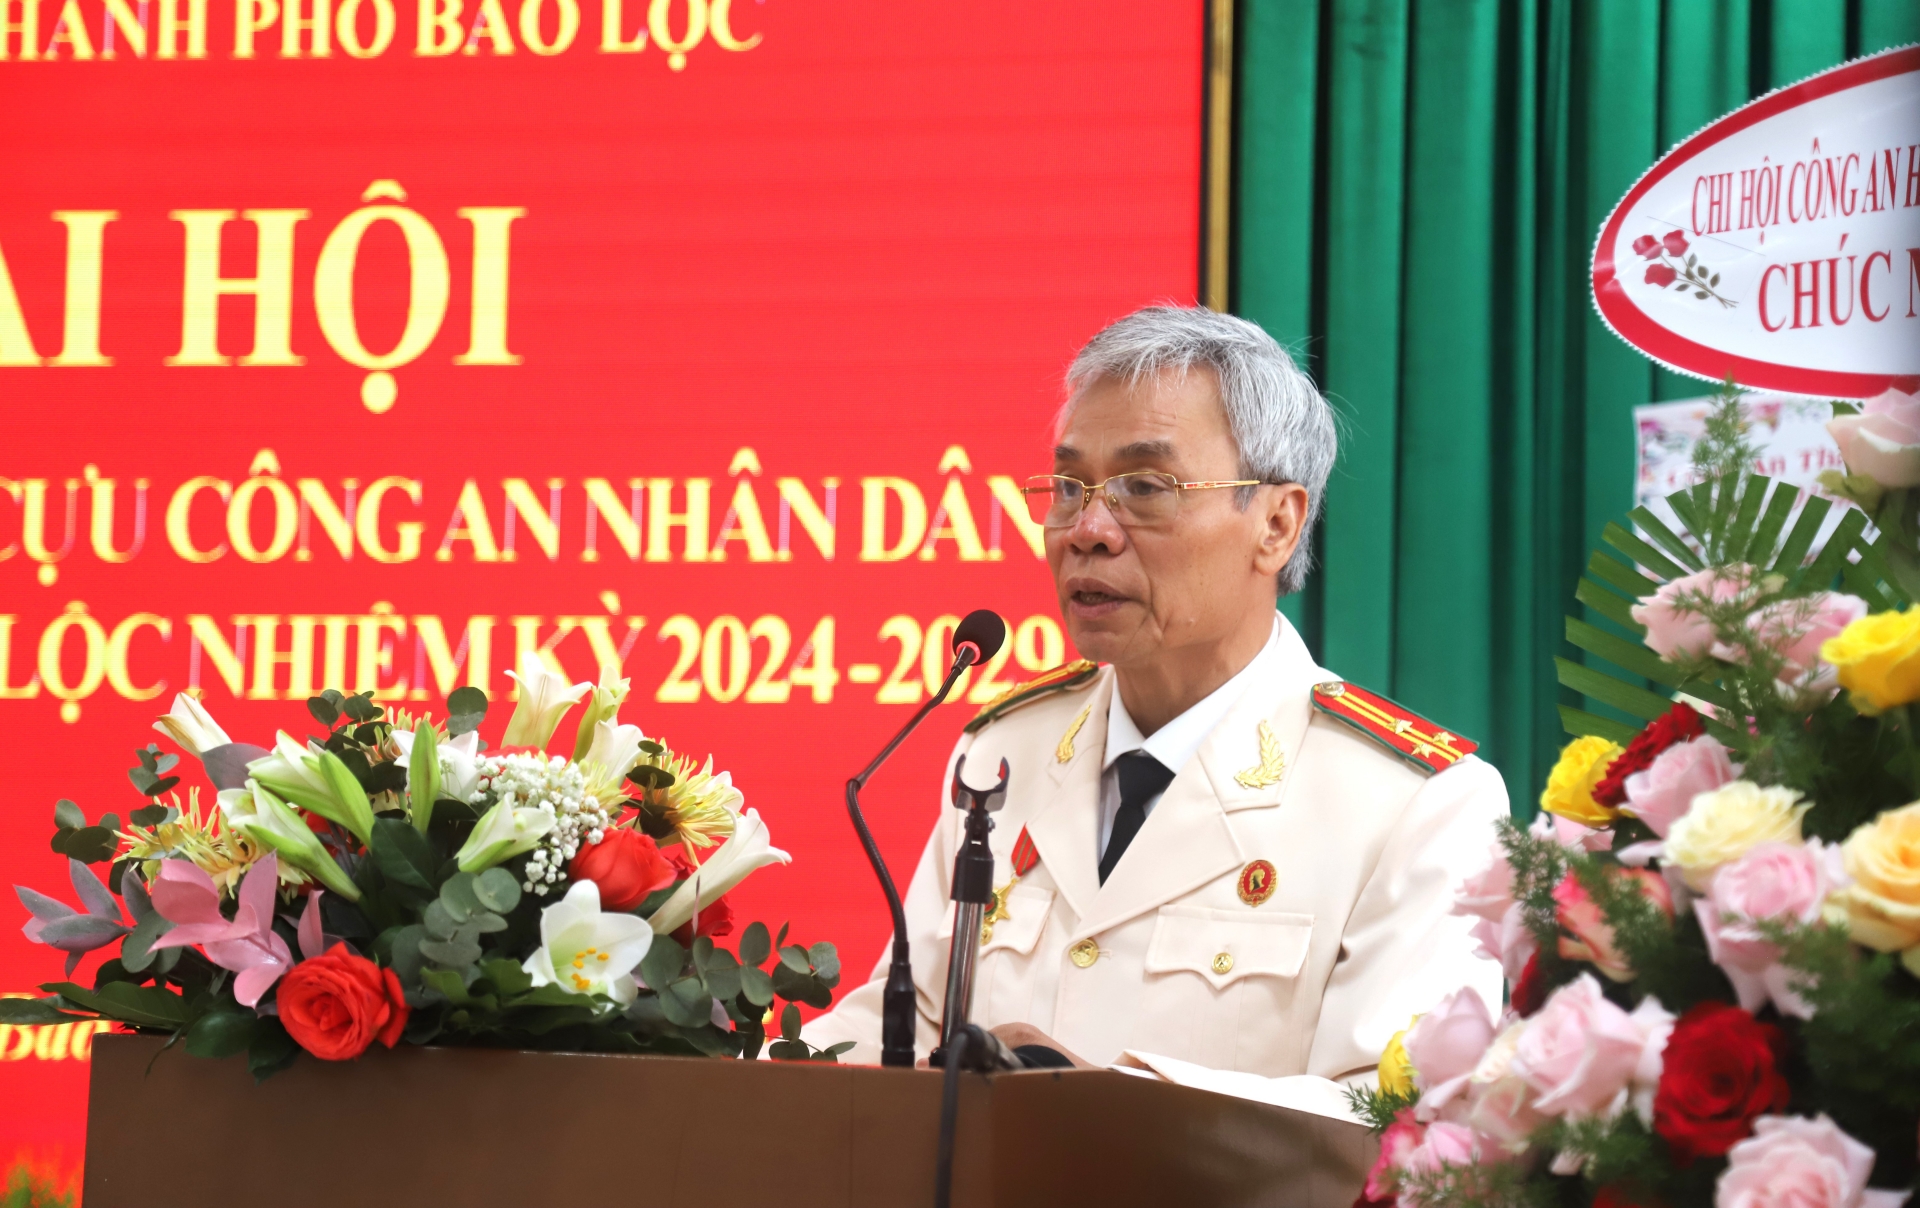 Thượng tá Đinh Hữu Linh - Chủ tịch Hội Cựu Công an Nhân dân TP Bảo Lộc phát biểu nhận nhiệm vụ tại Đại hội